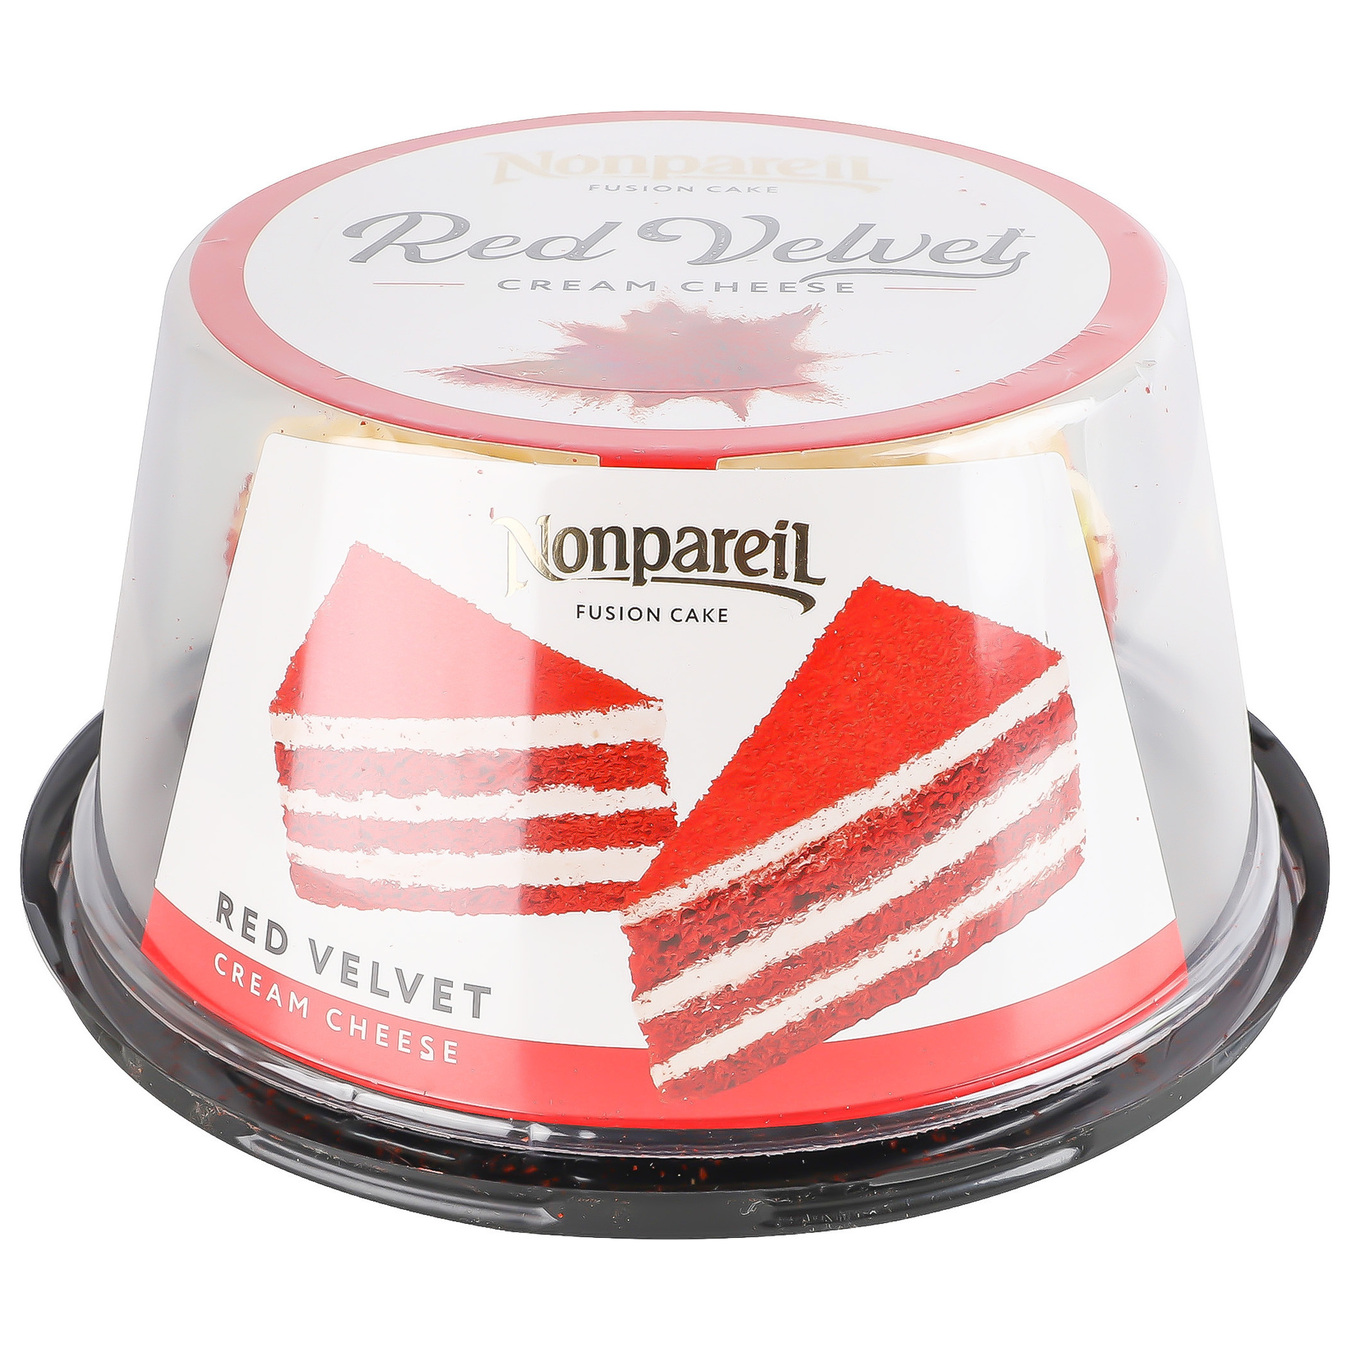 Nonpareil Cake Red velvet 0,5kg